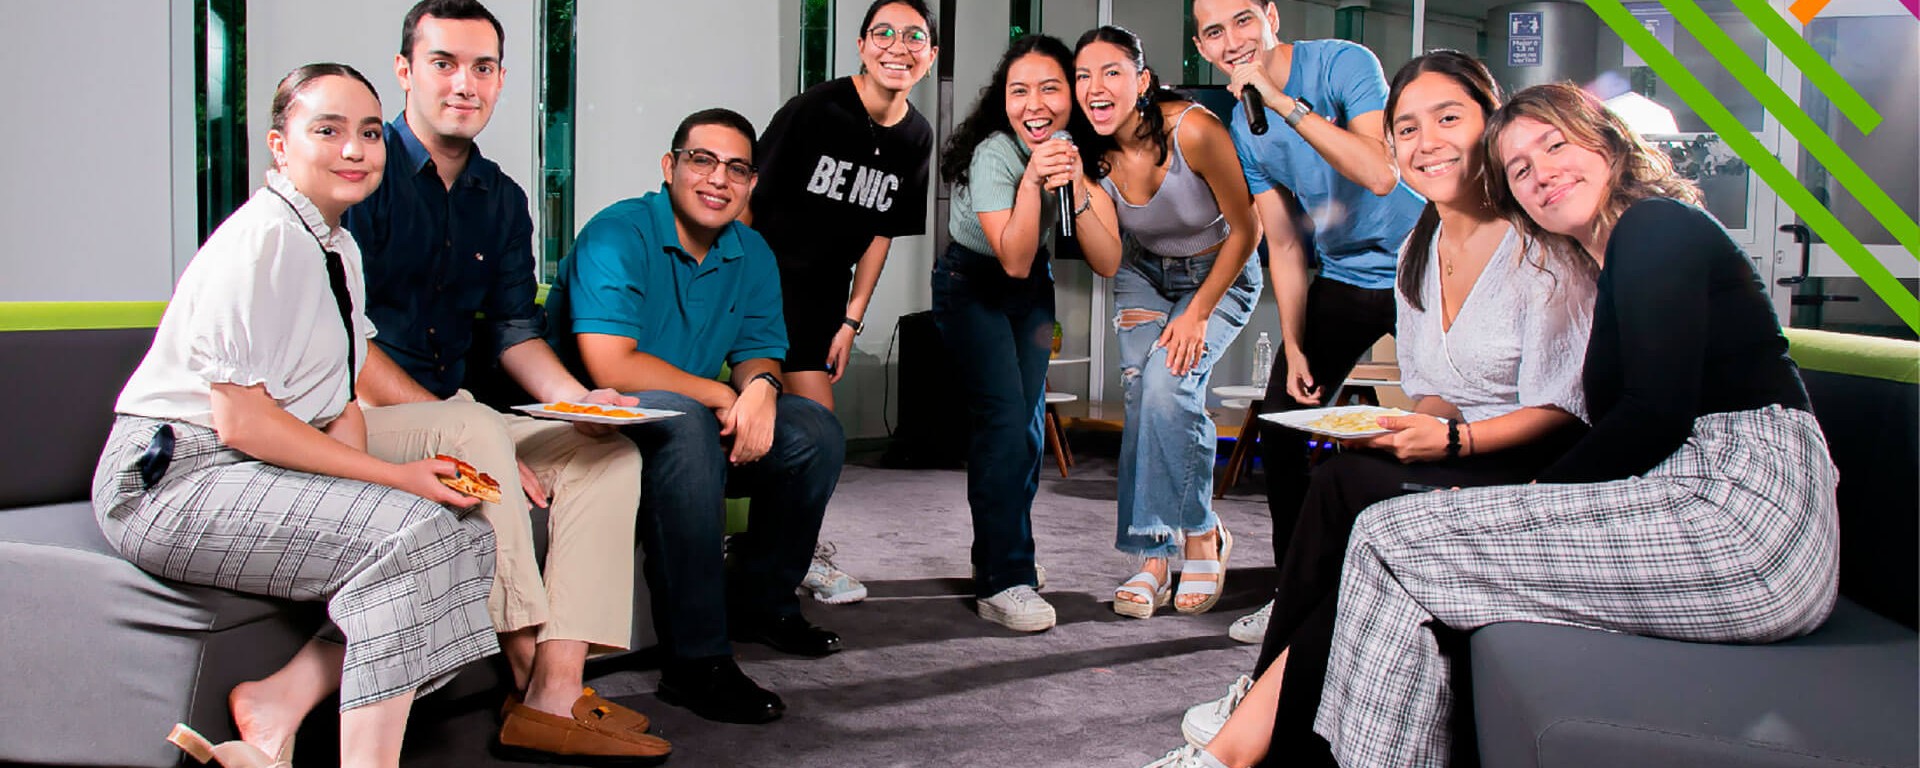 Students at Tec Residences, Tec de Monterrey